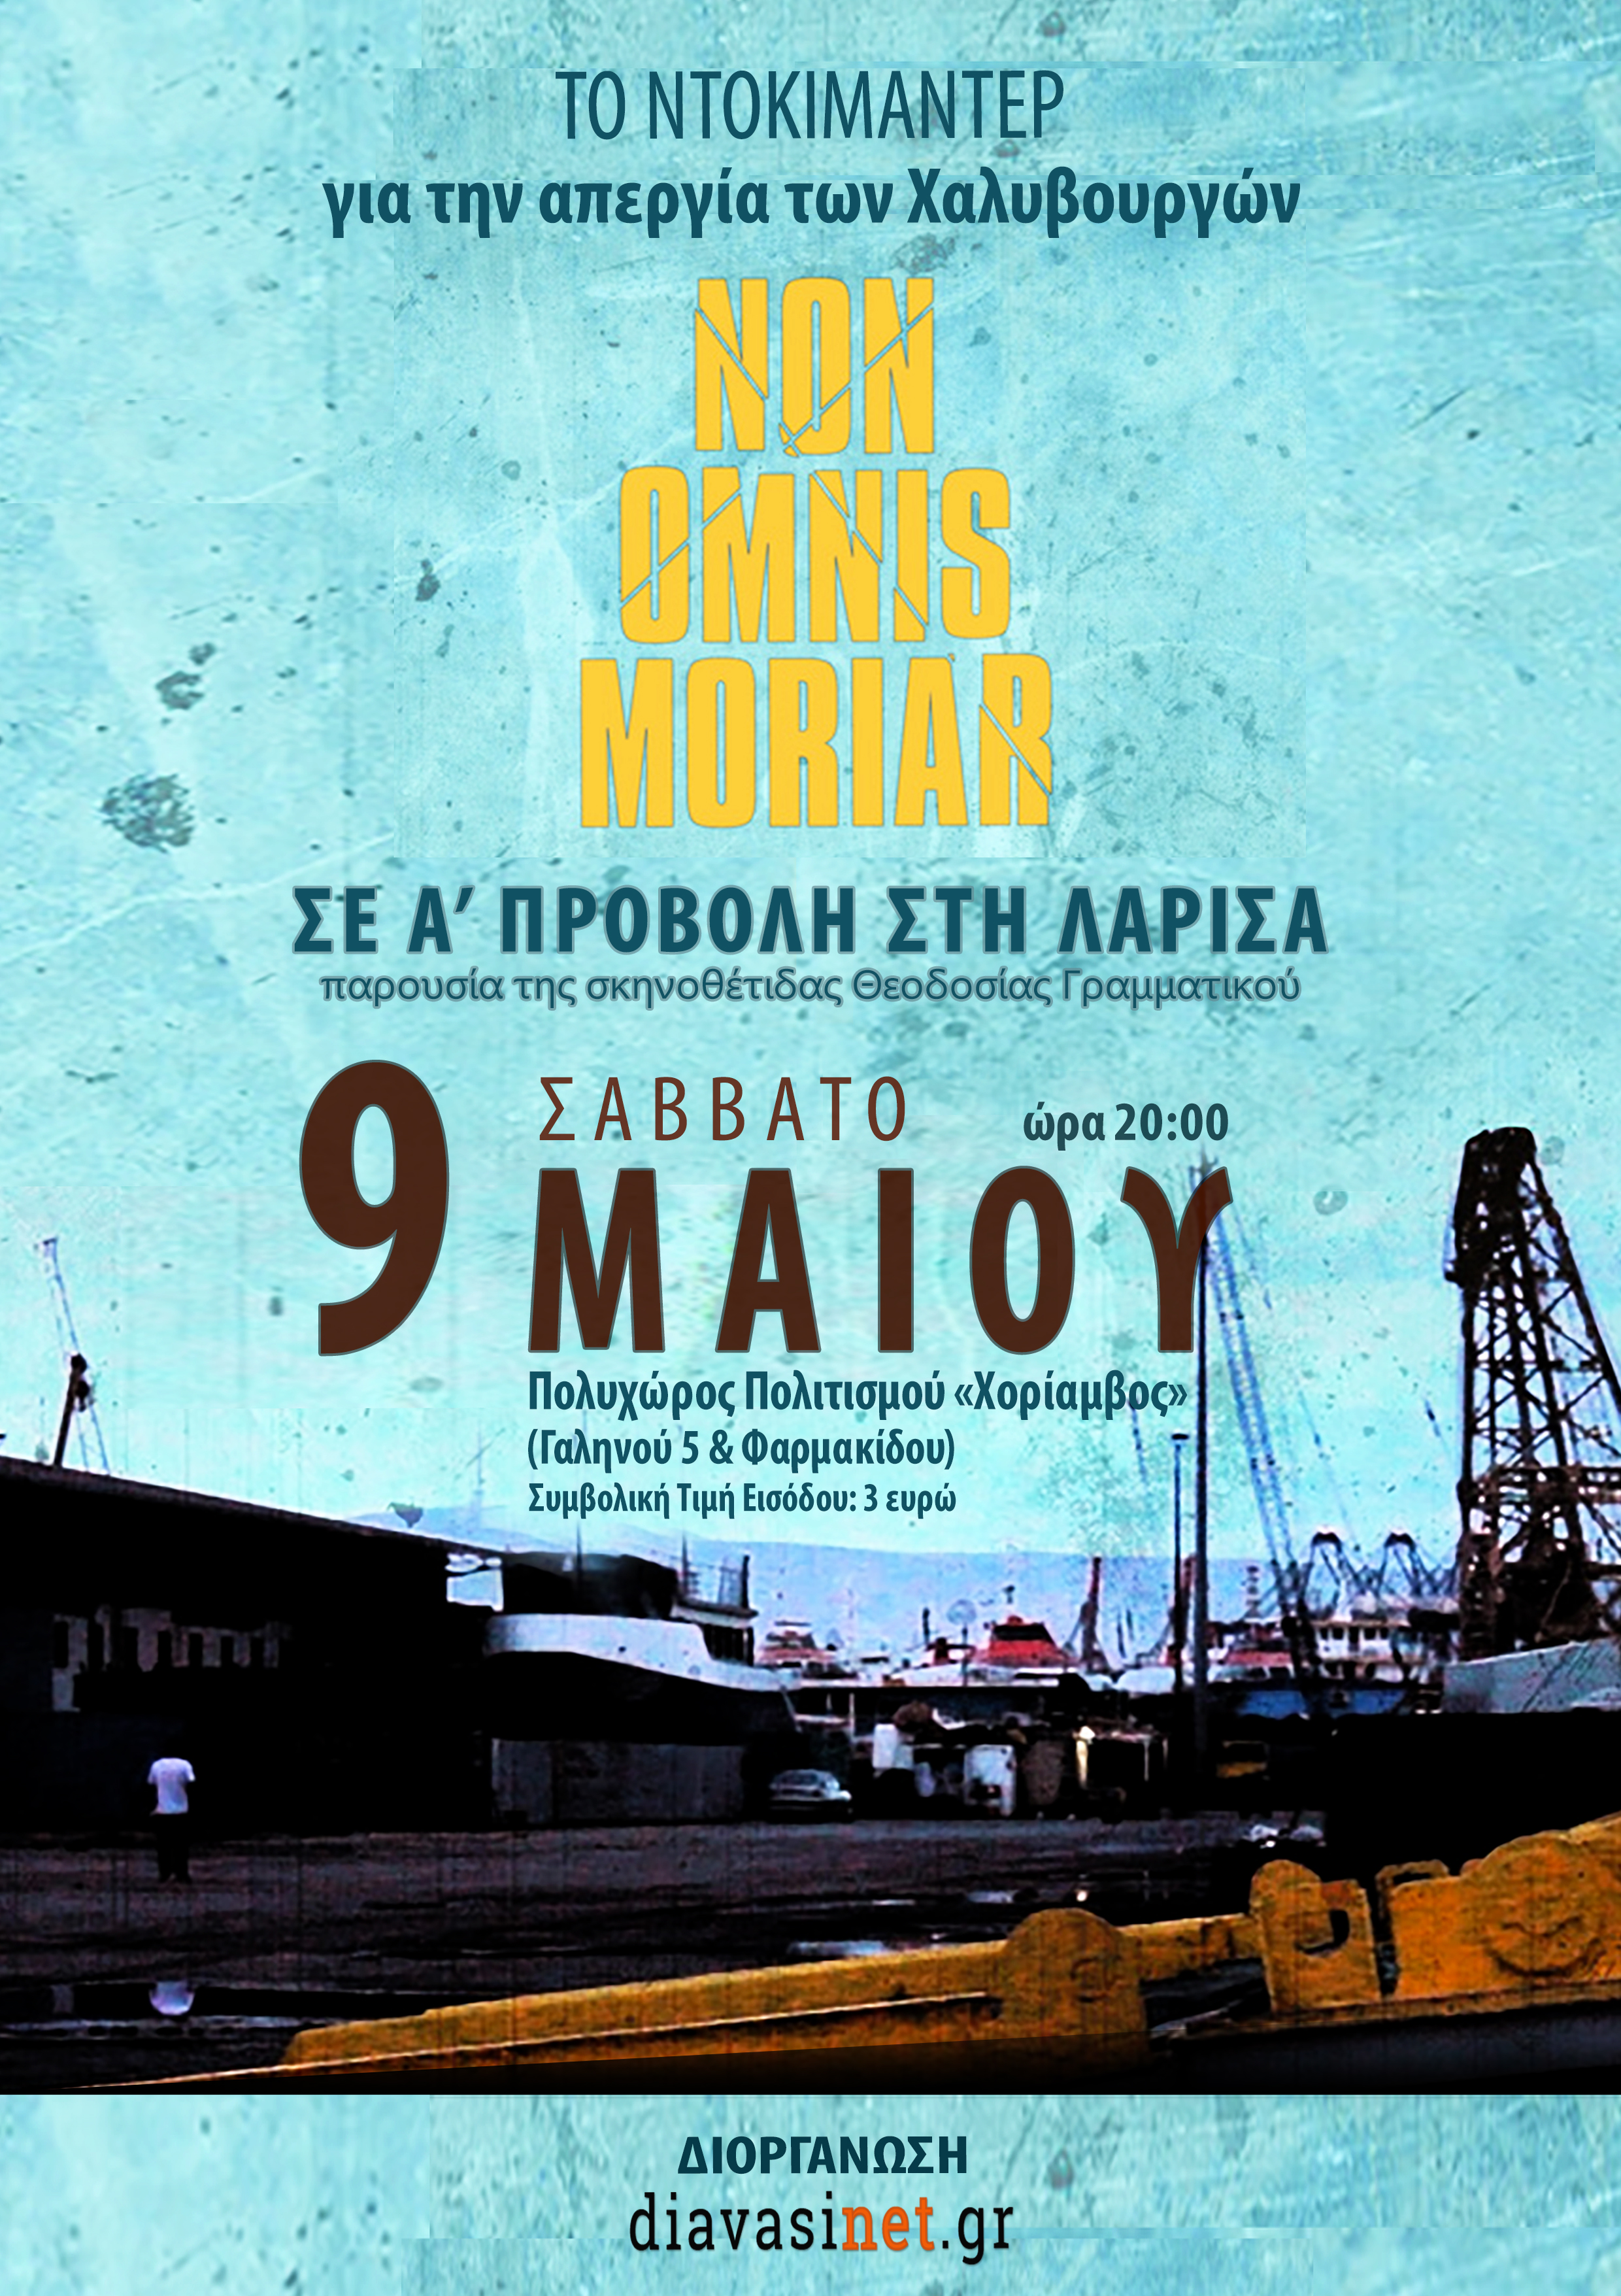 Το ντοκιμαντέρ "Non Omnis Moriar" για την απεργία της Χαλυβουργίας το Σάββατο στη Λάρισα 